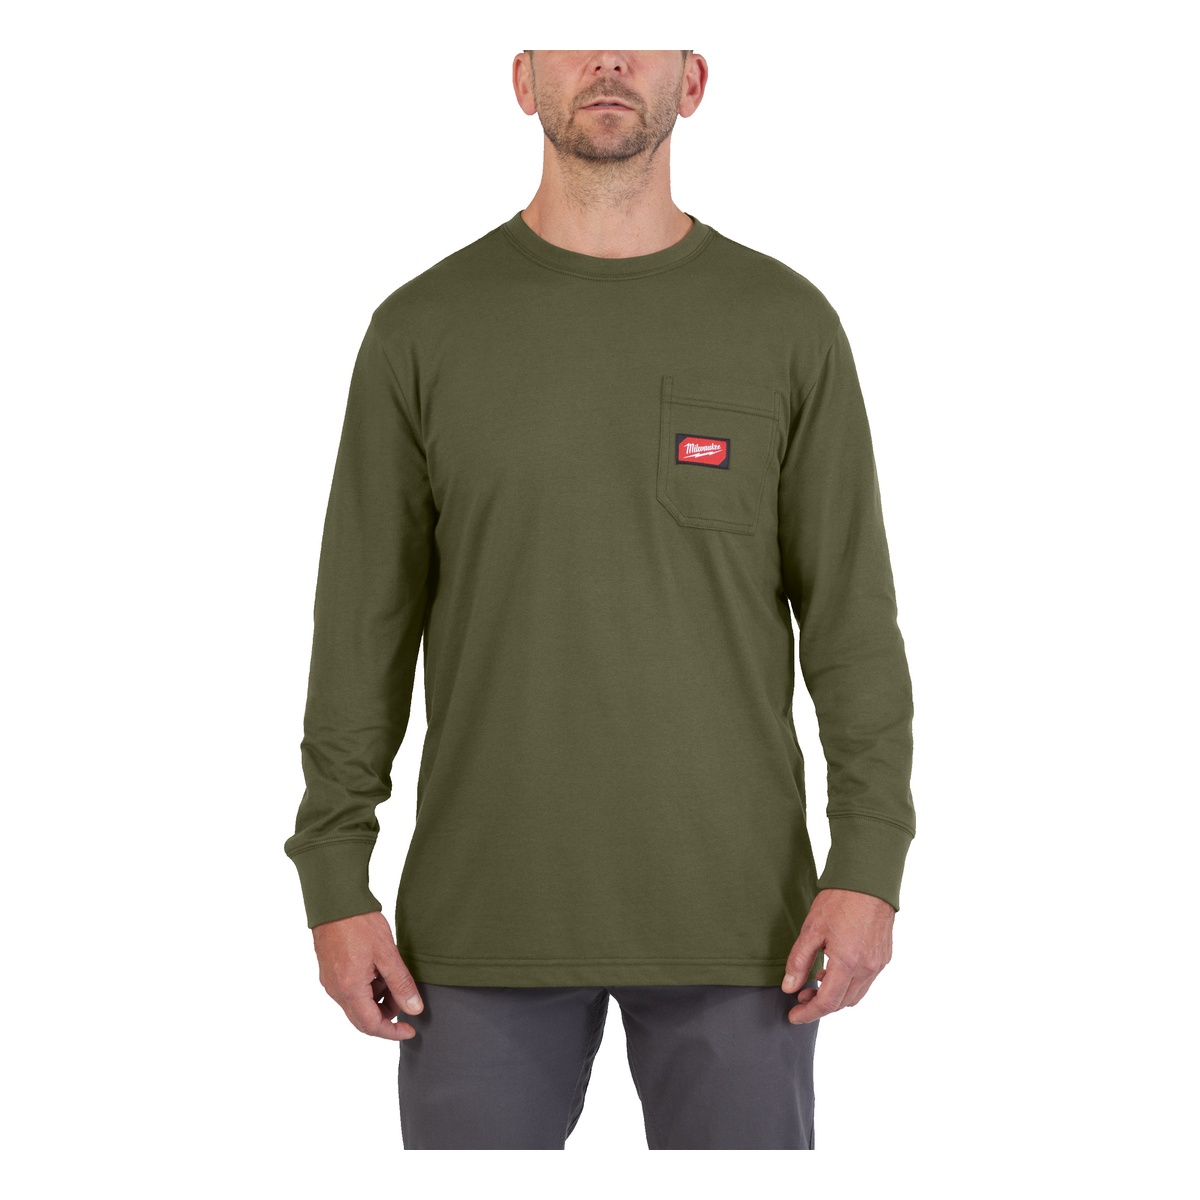 Milwaukee Arbeits-Langarm-Shirt grün mit UV-Schutz WTLSGN-XL - 1 Stk.